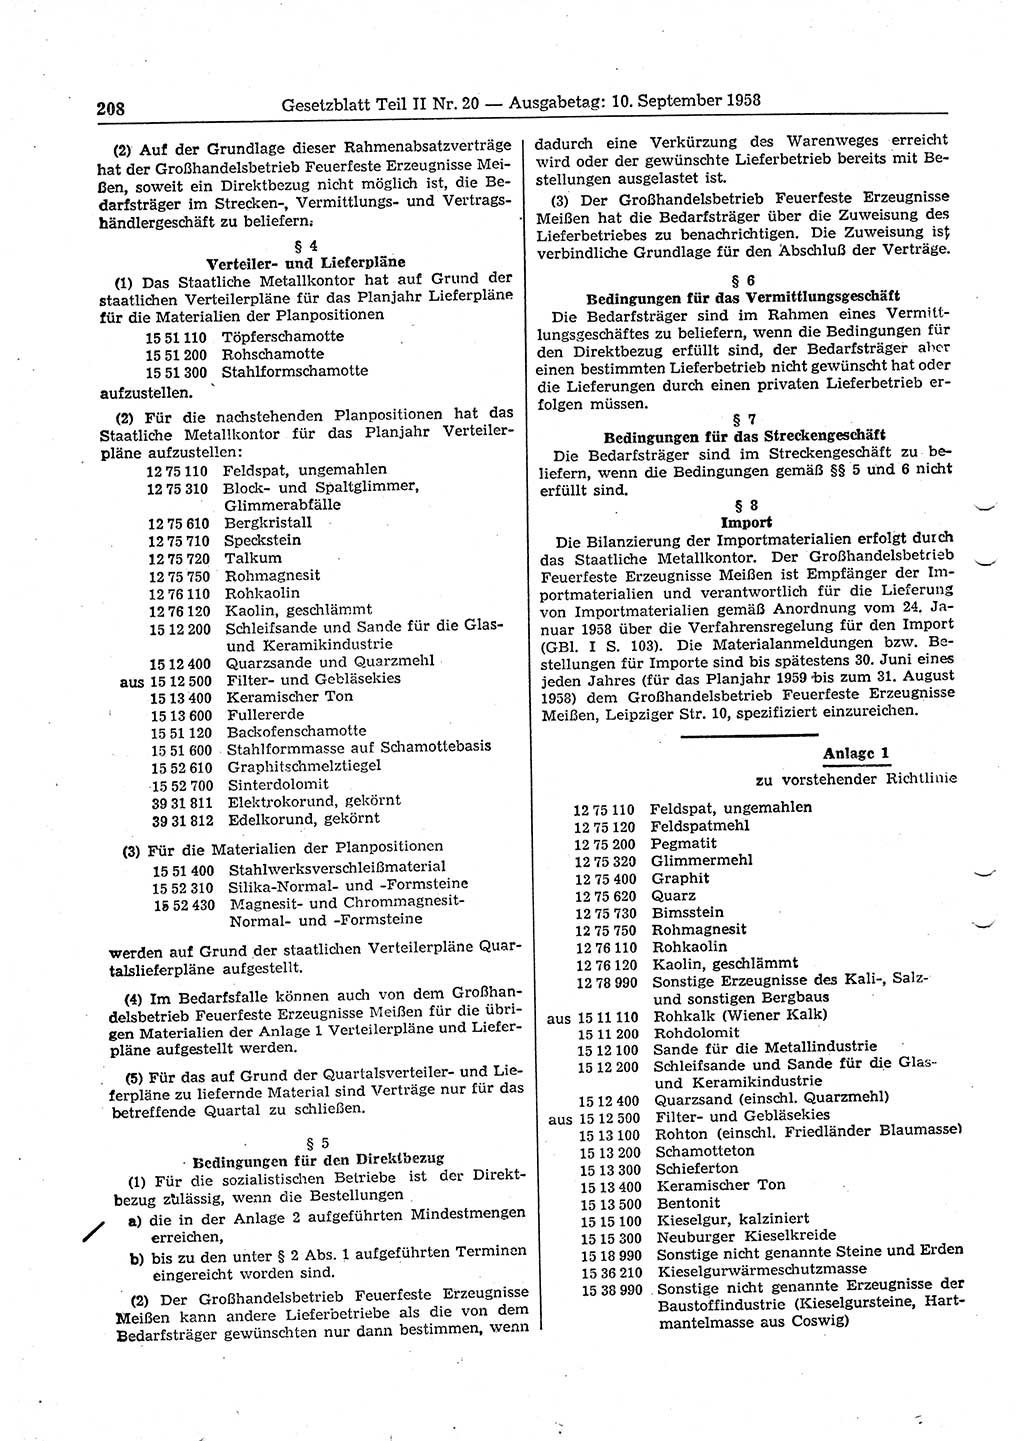 Gesetzblatt (GBl.) der Deutschen Demokratischen Republik (DDR) Teil ⅠⅠ 1958, Seite 208 (GBl. DDR ⅠⅠ 1958, S. 208)